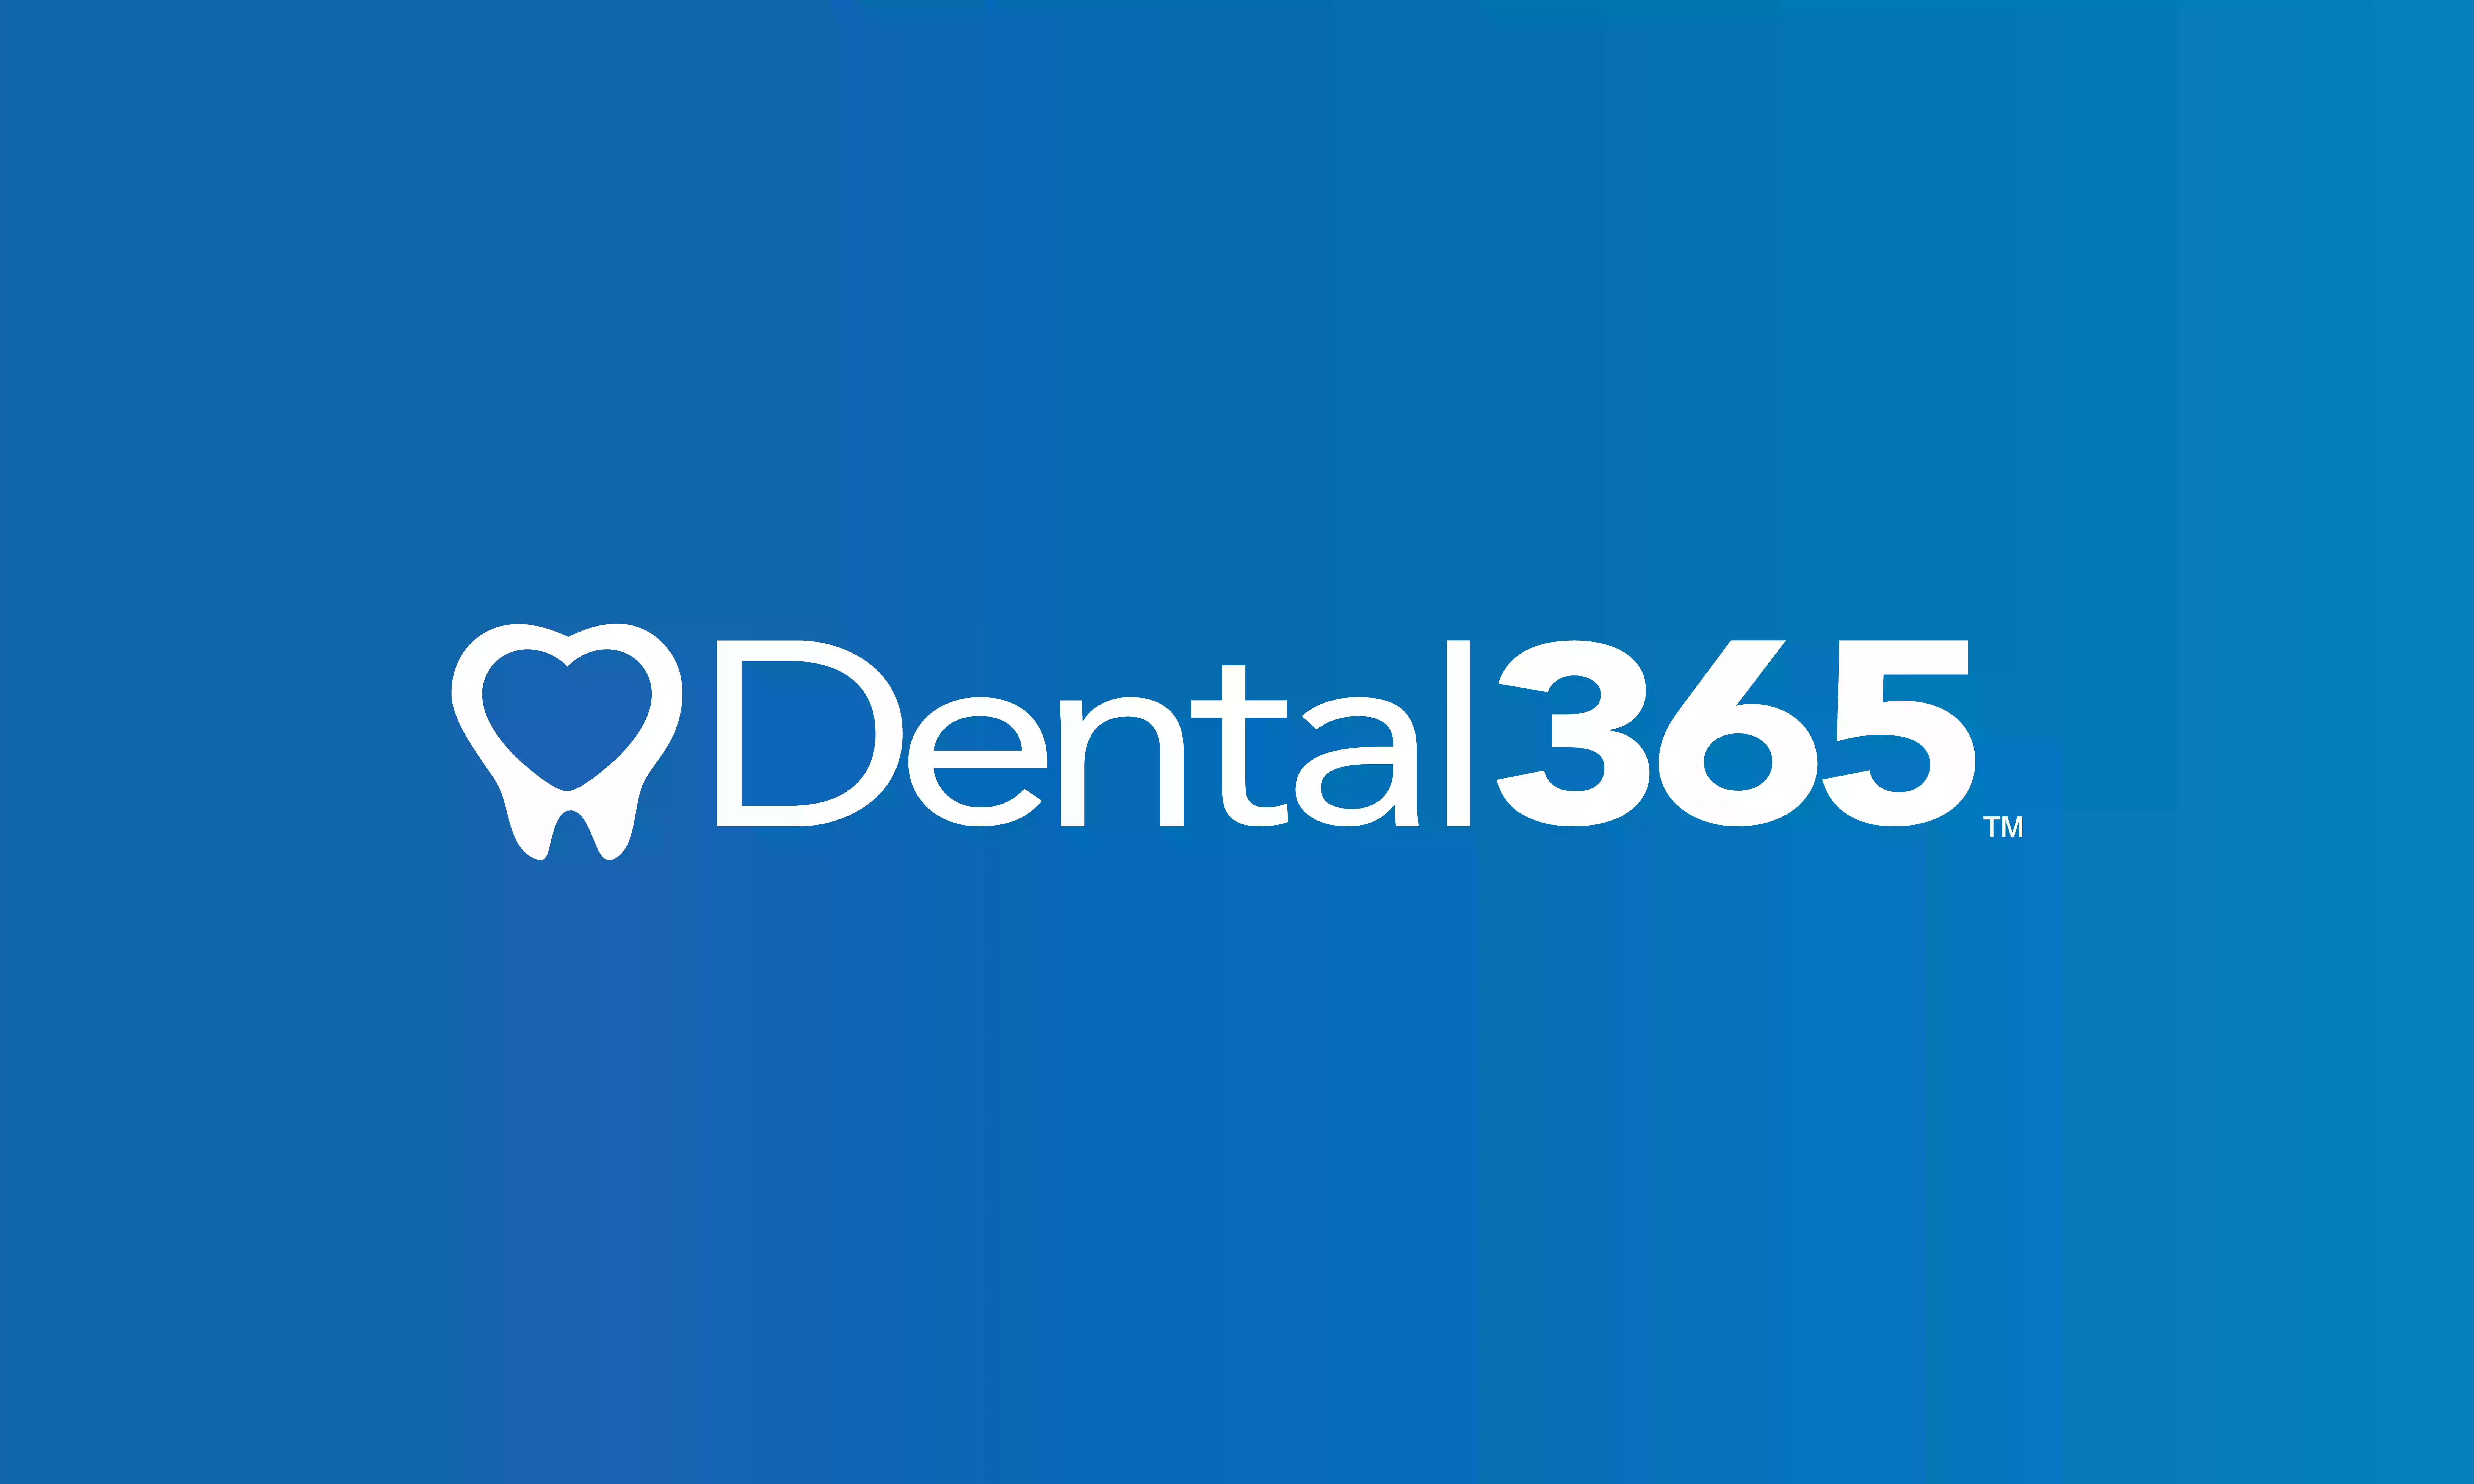 Dental365 - Mt. Sinai